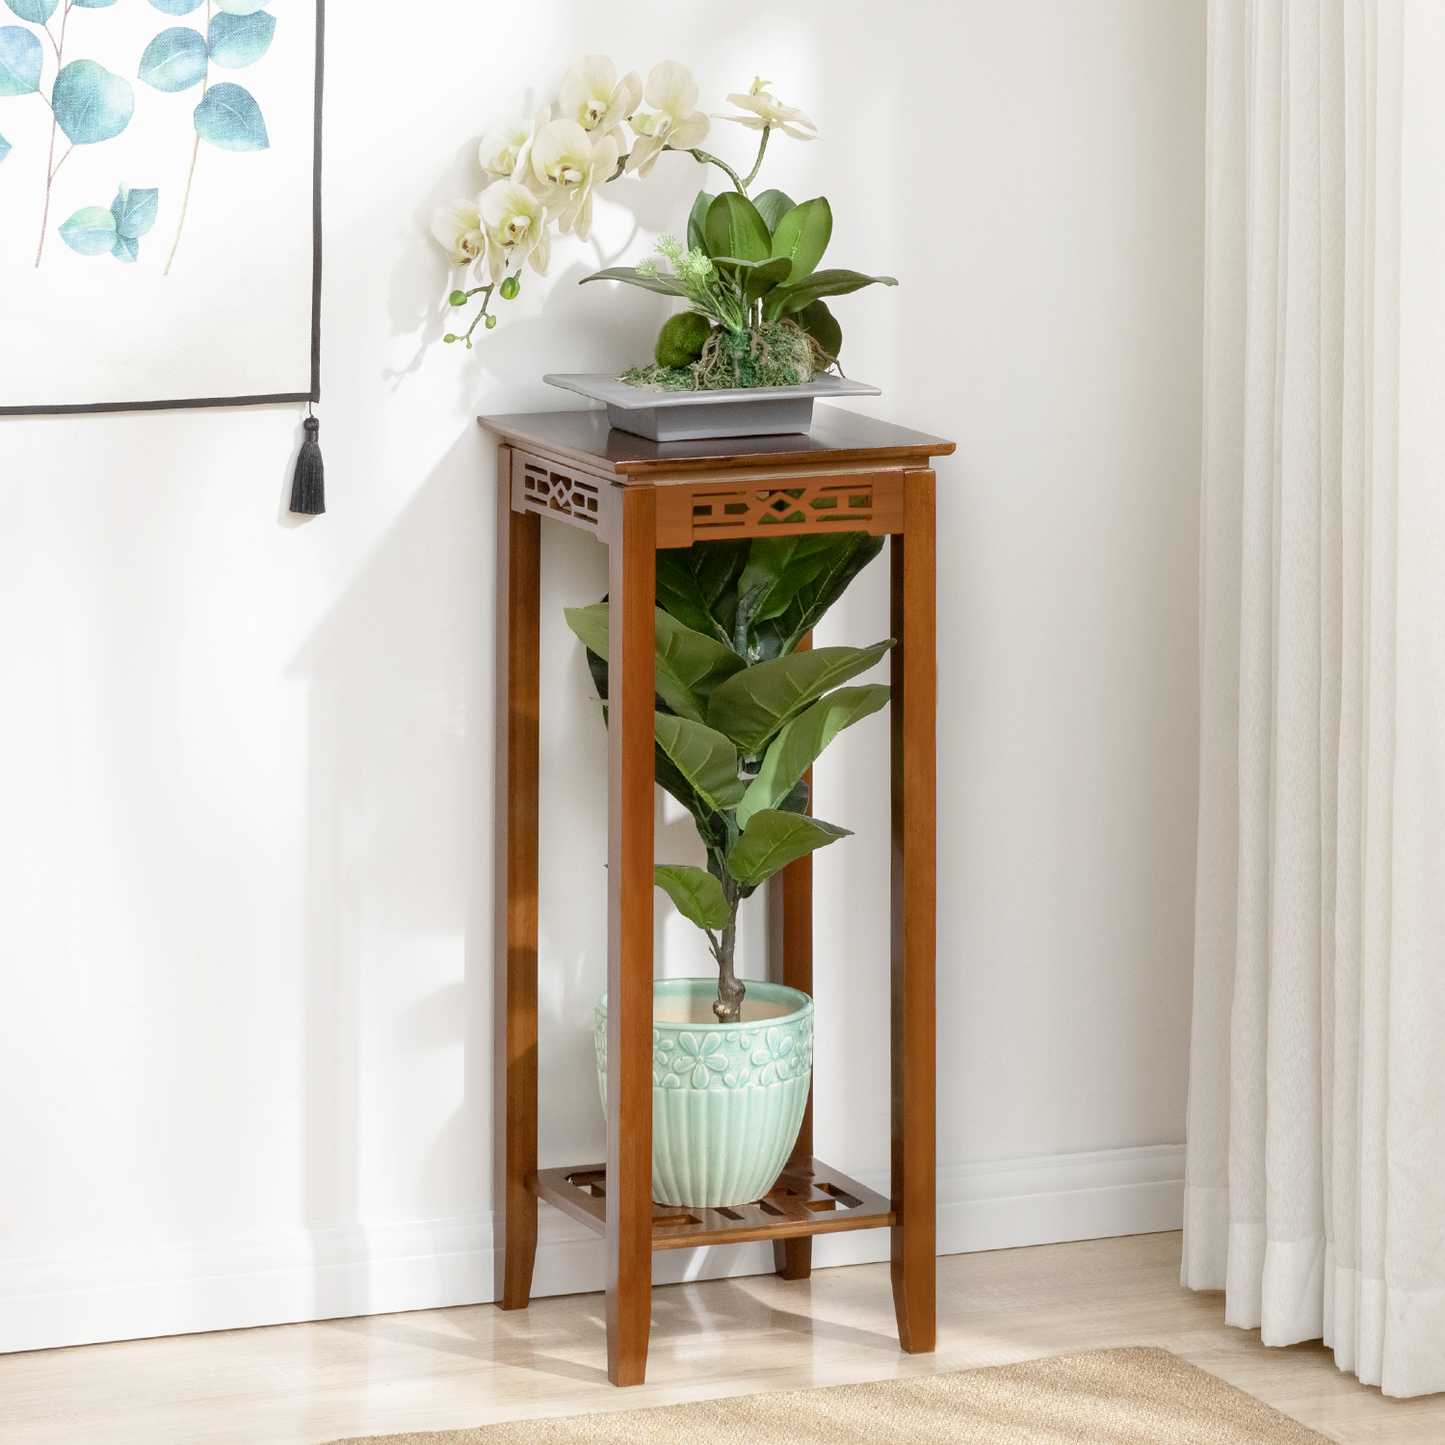 Oriental Vintage Flower Plant Stand - Antique Frame Display Shelf - Square Holder